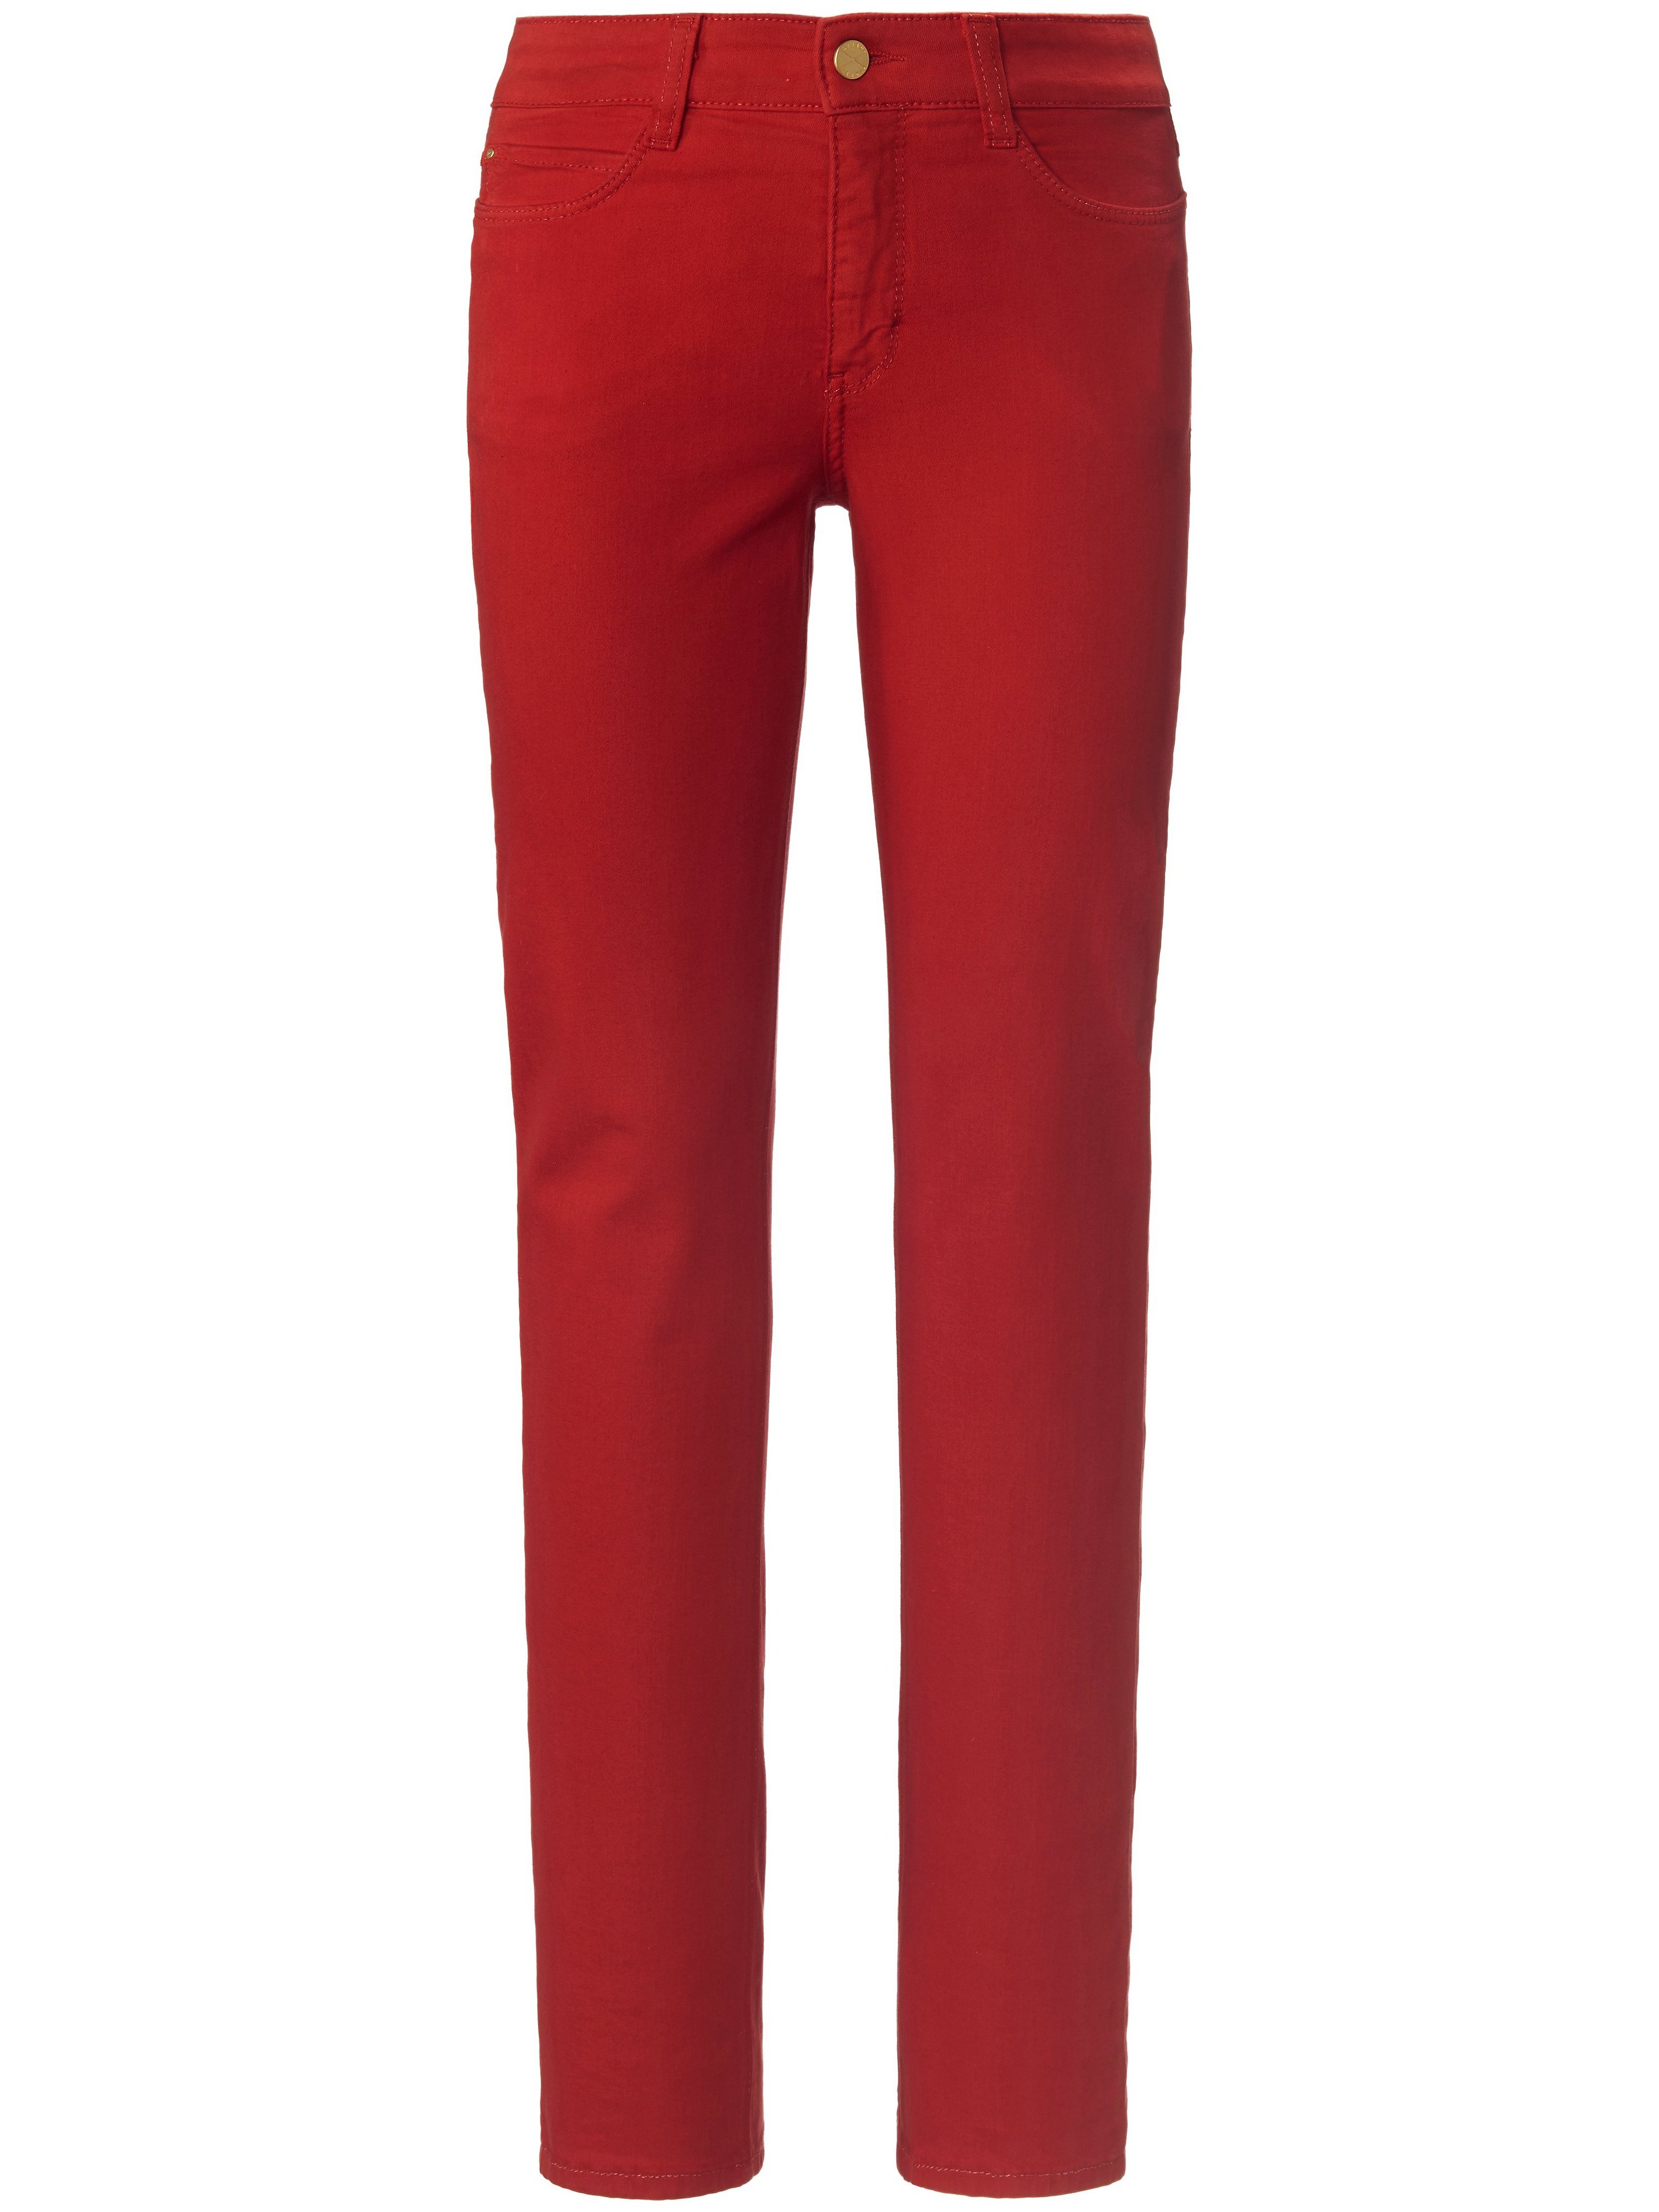 Le jean modèle Dream  Mac rouge taille 48